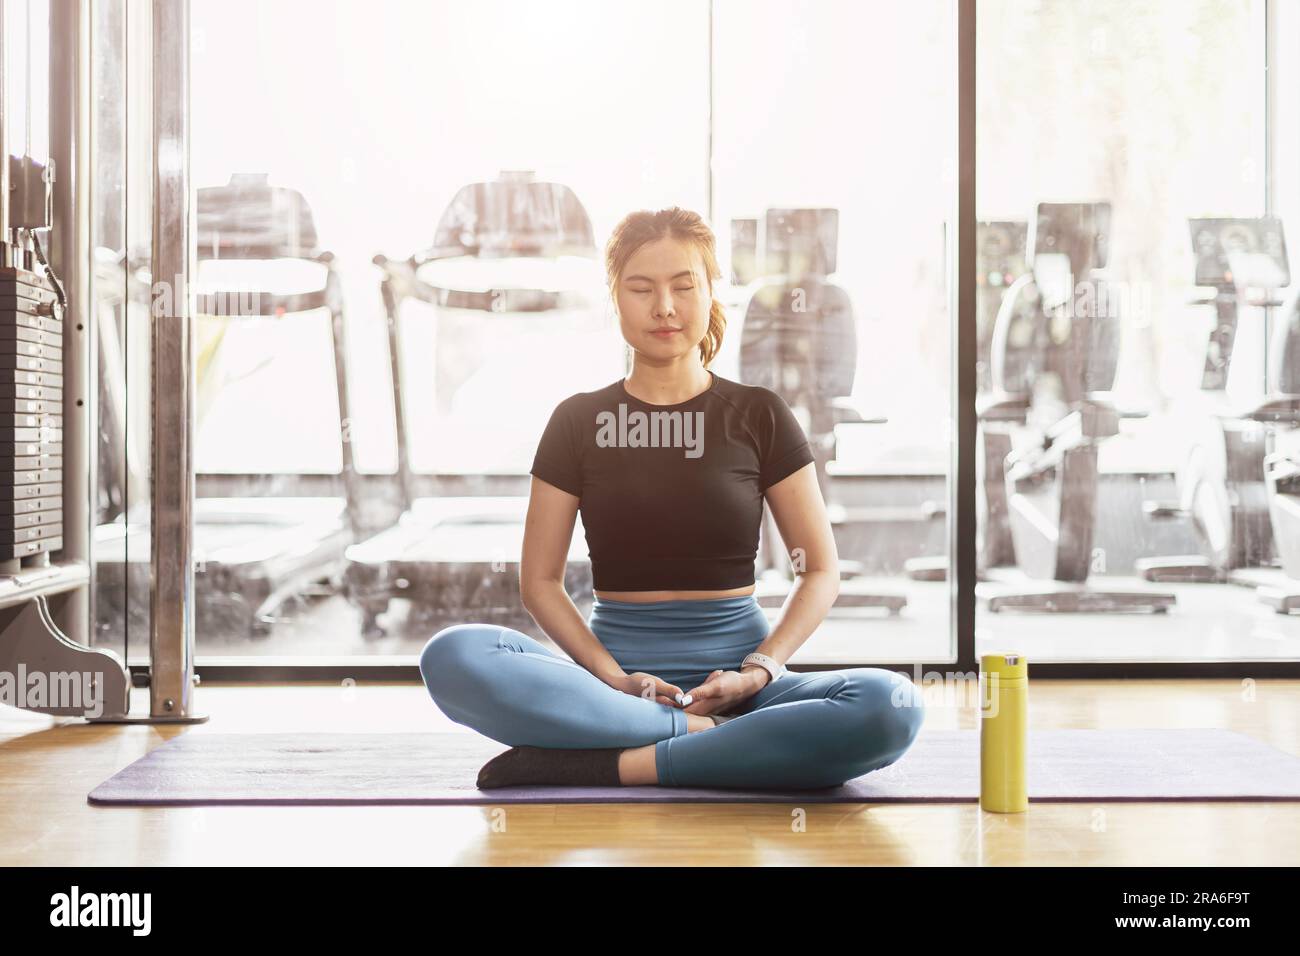 Jeune femme asiatique pratiquant le yoga assis dans l'exercice de méditation, repos calme relax poser s'entraîner en portant des vêtements de sport, séance de méditation sport en intérieur Banque D'Images